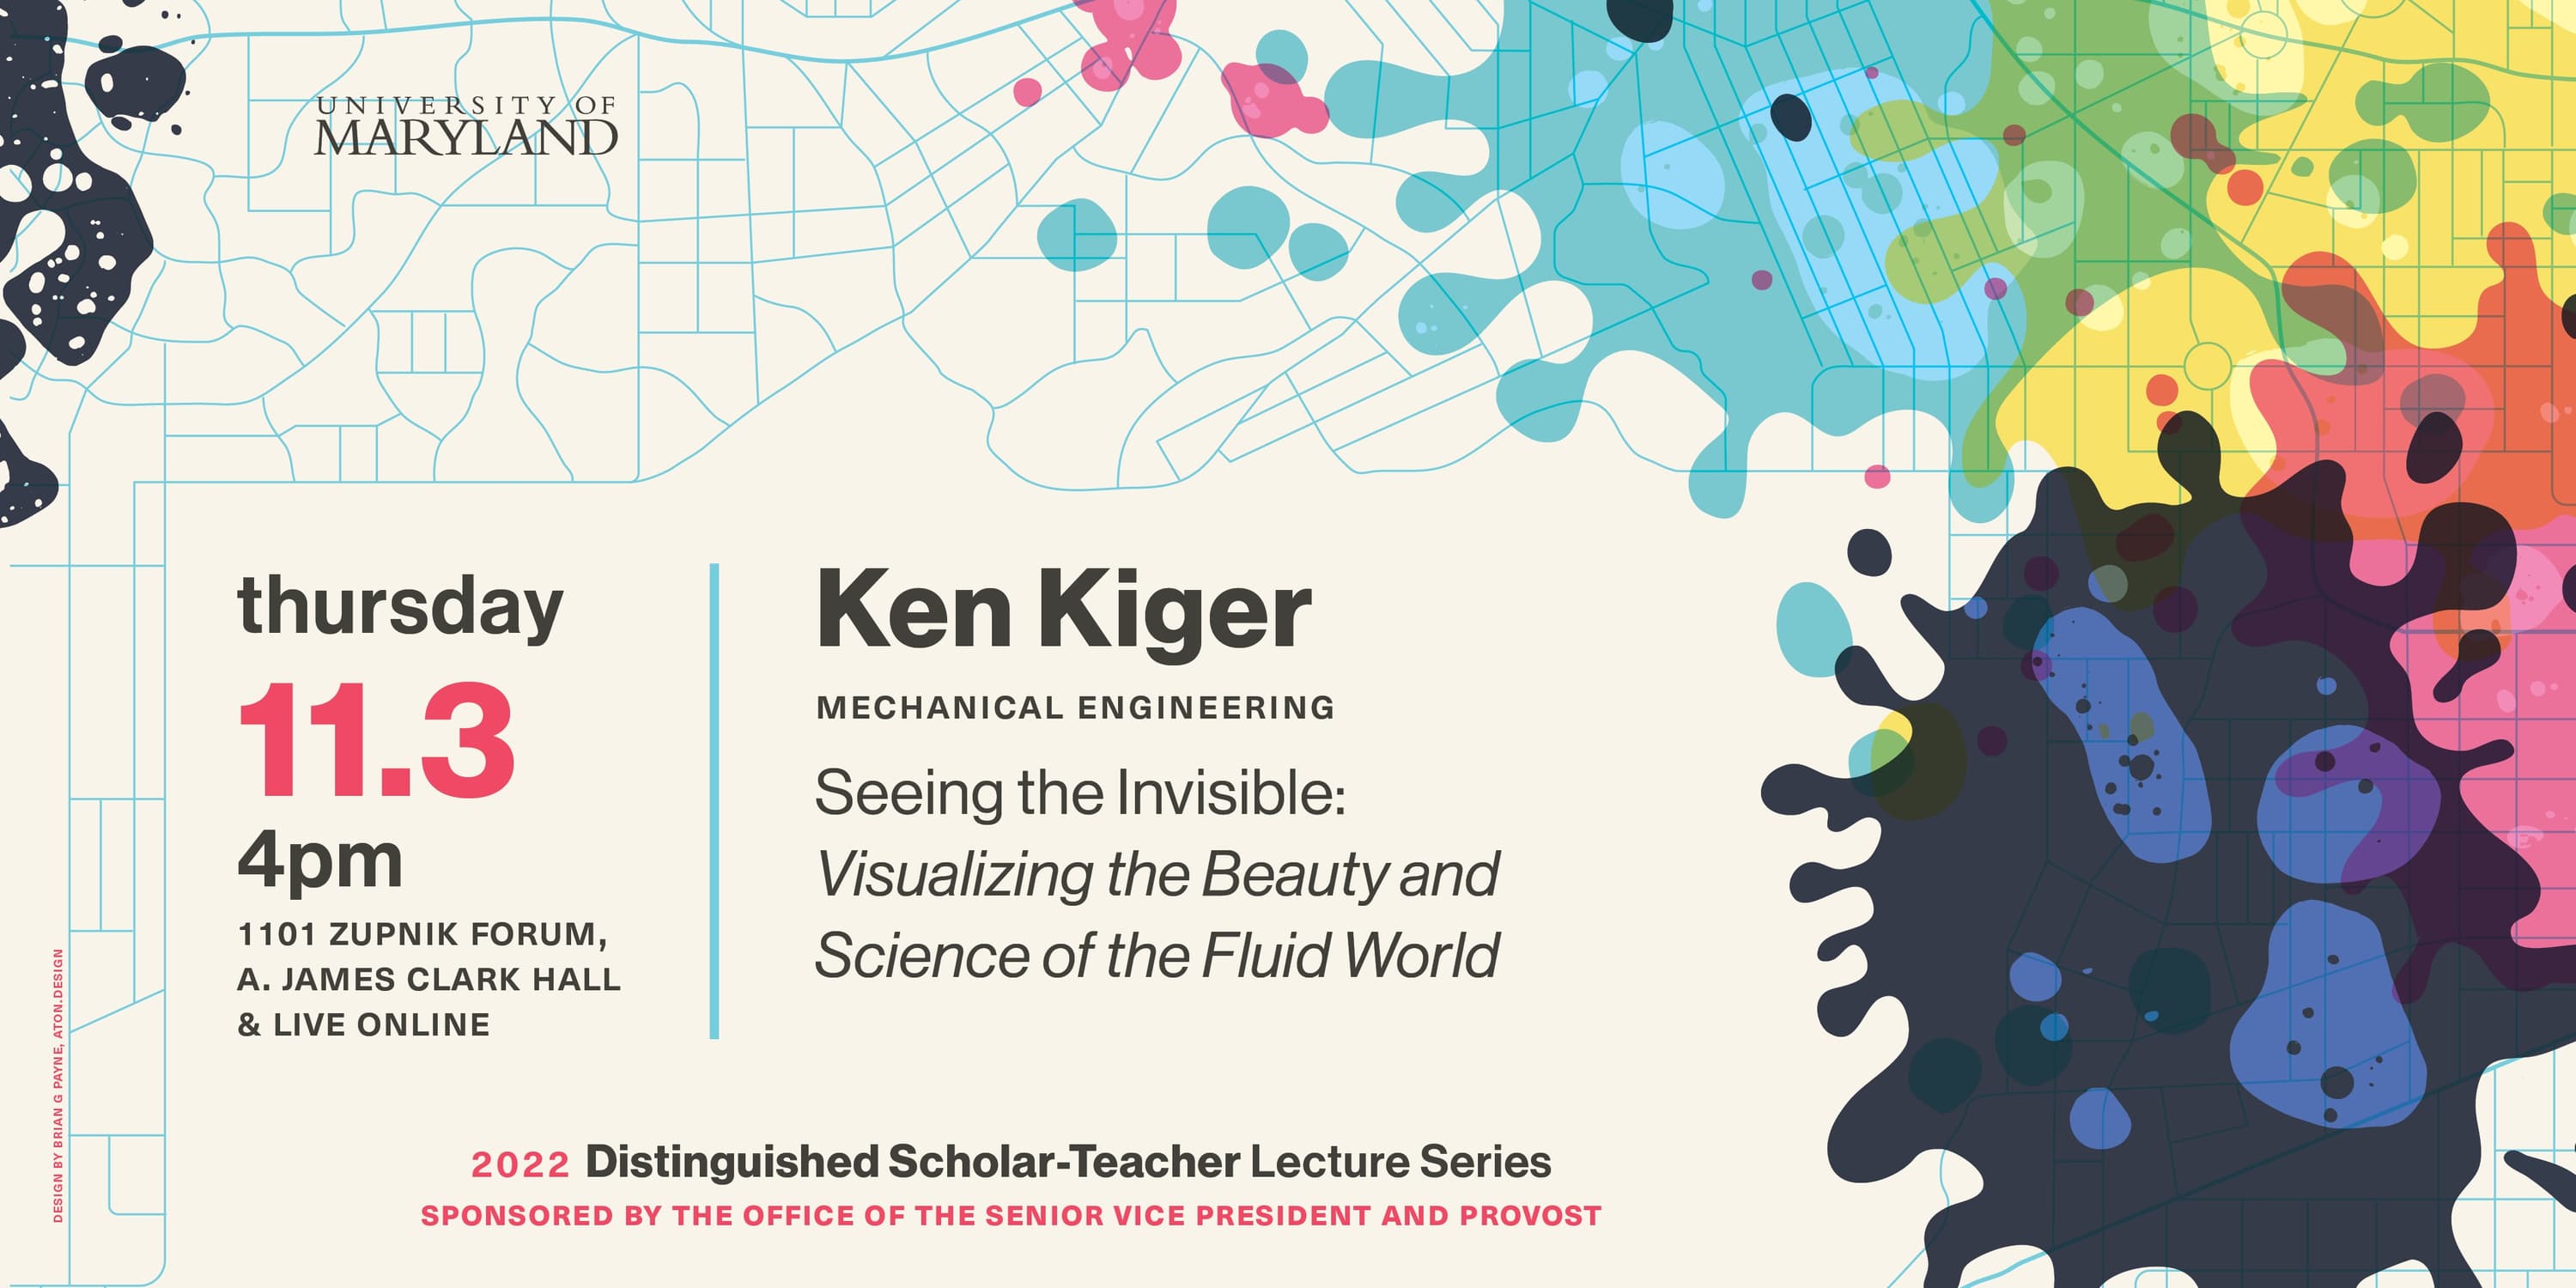 Dr. Ken Kiger's Distinguished Scholar-Teacher Lecture Poster